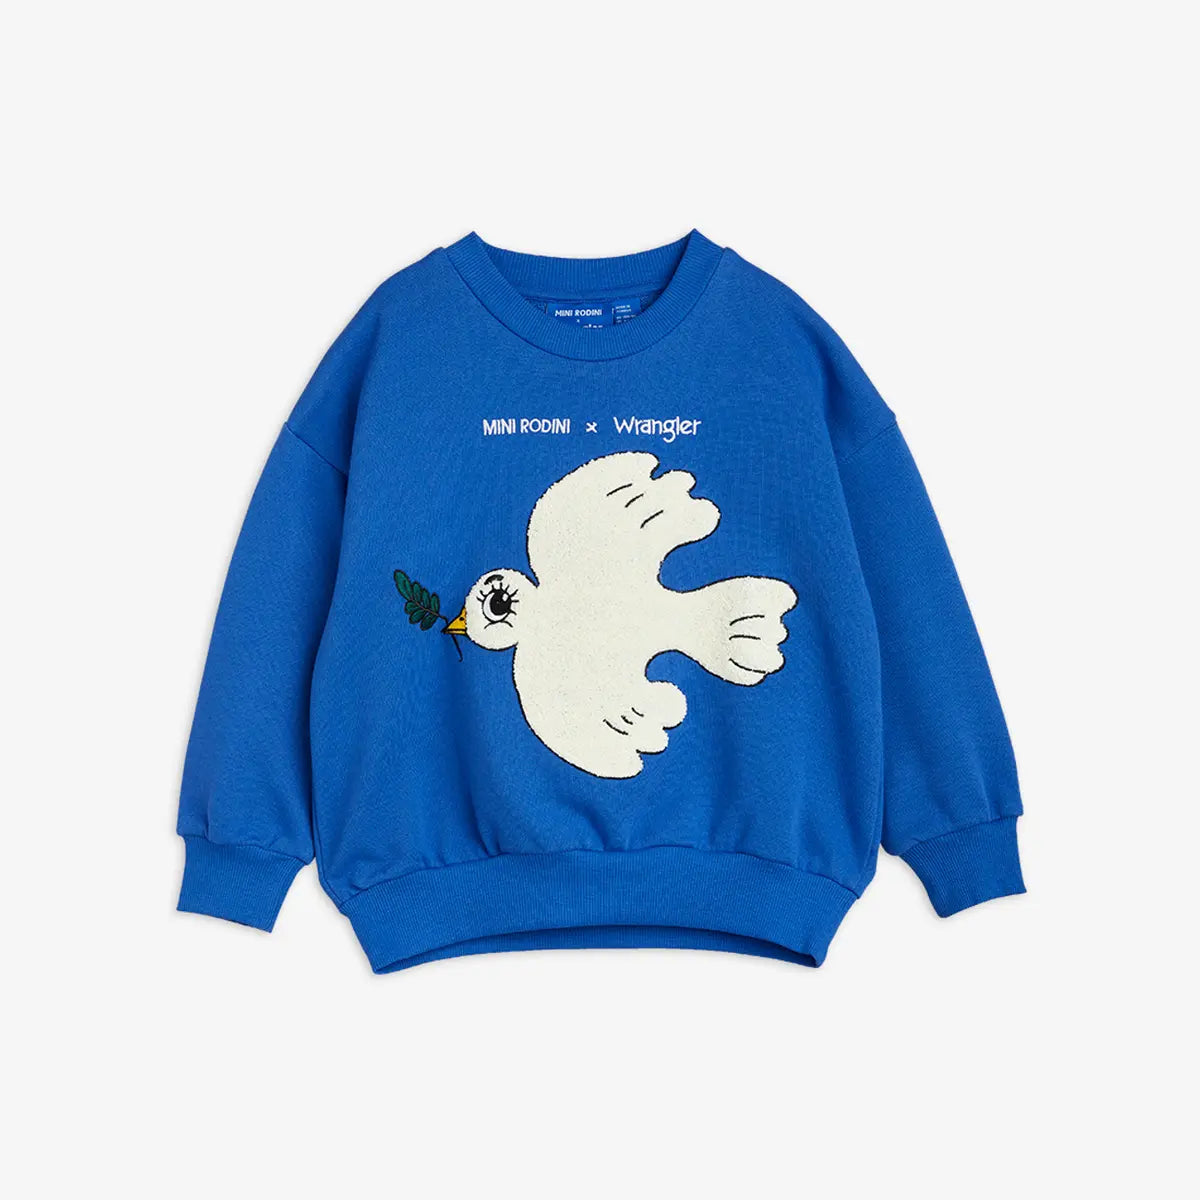 Mini Rodini x Wrangler Peace Dove Chenille Sweatshirt, Blue